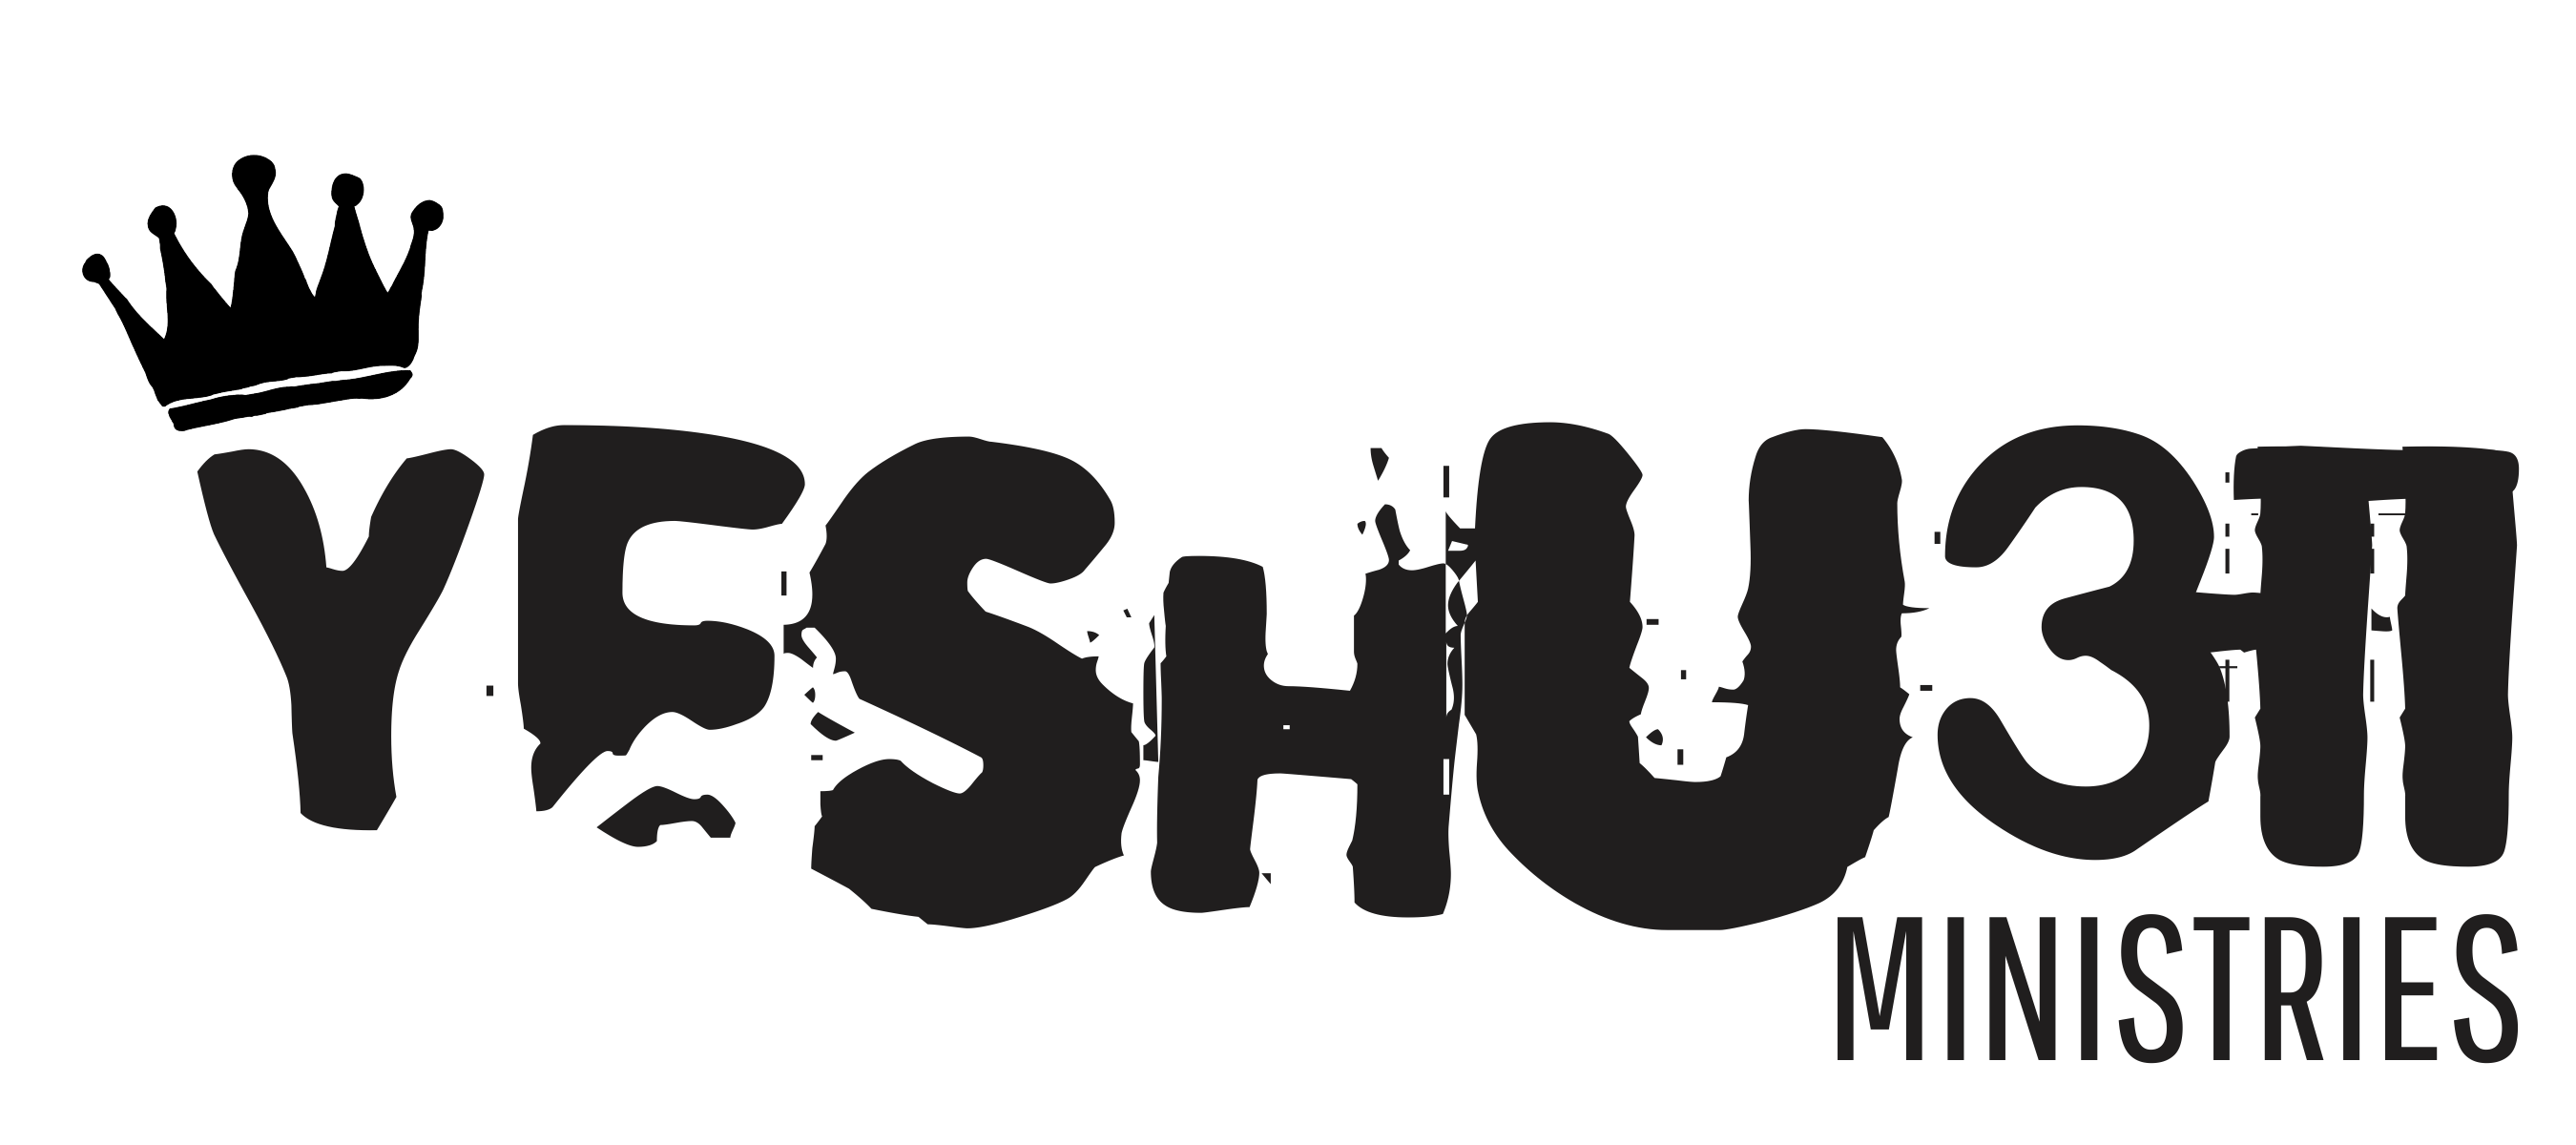 Yeshua Ministries logo